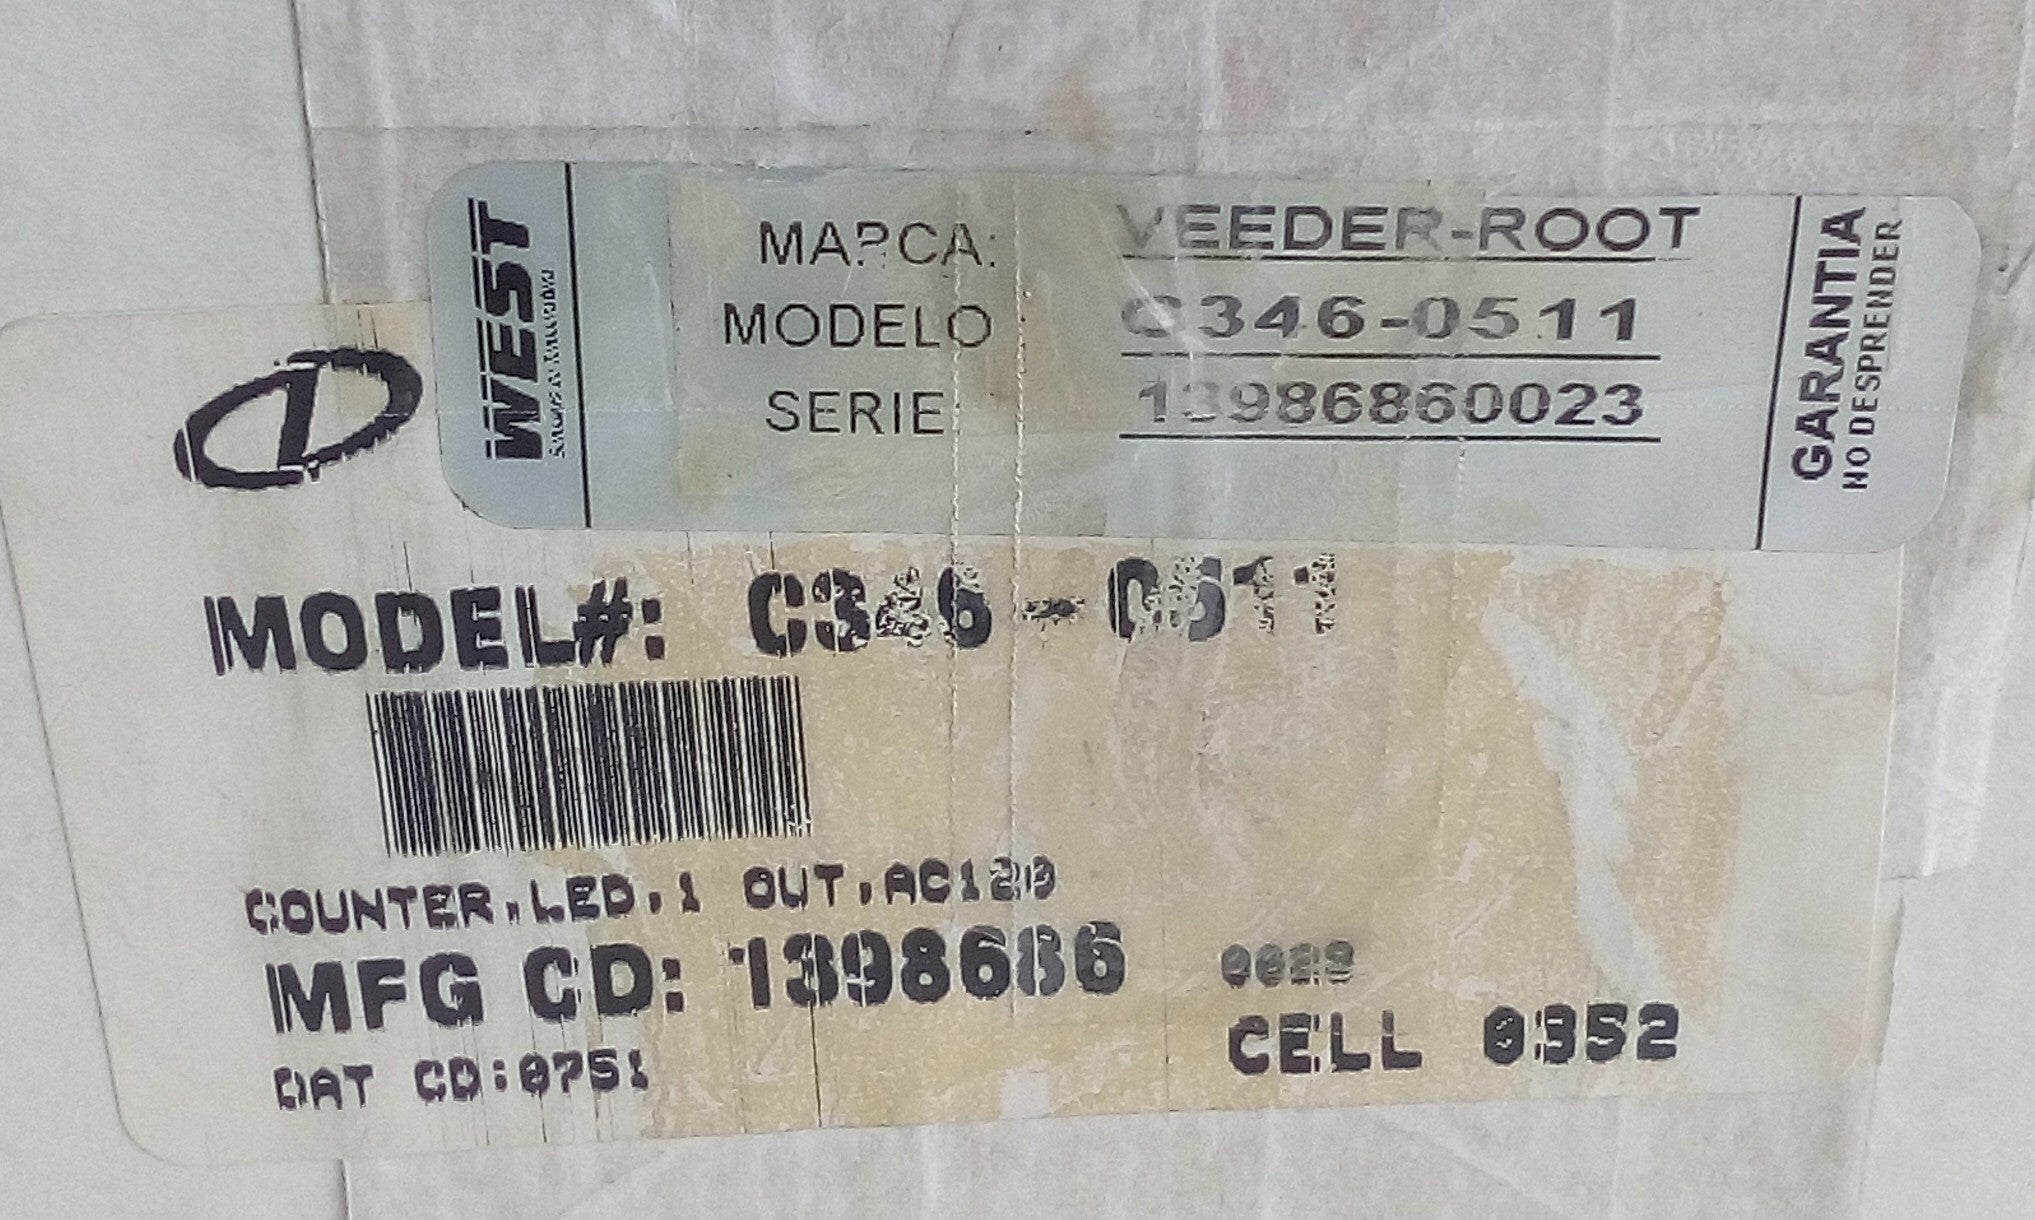 Contador Veeder-Root C346-0511